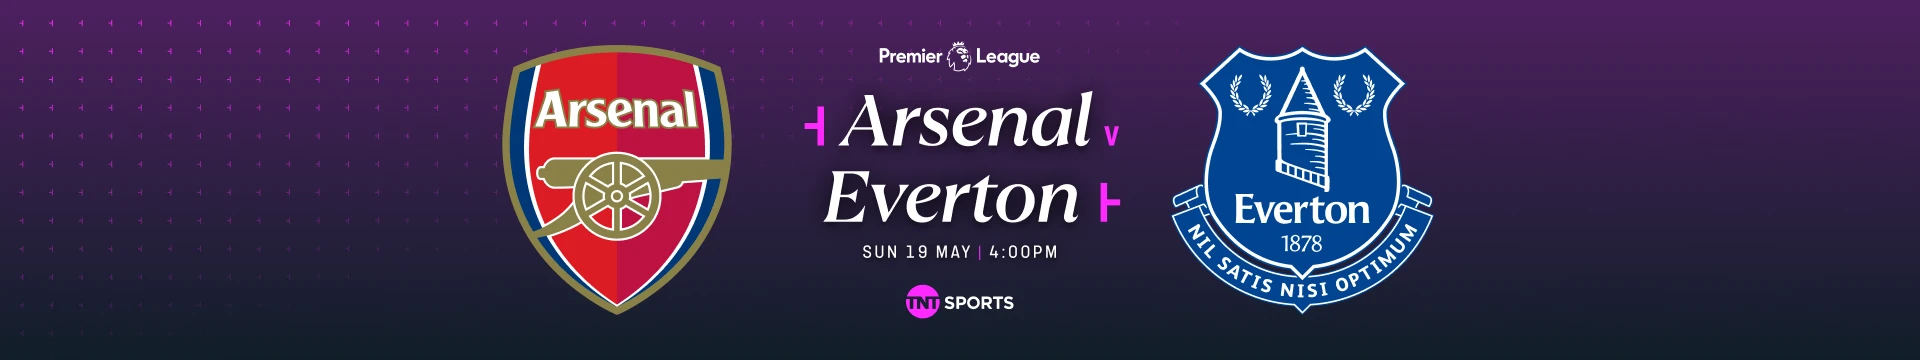 Arsenal v Everton Sunday 19 May at 4pm